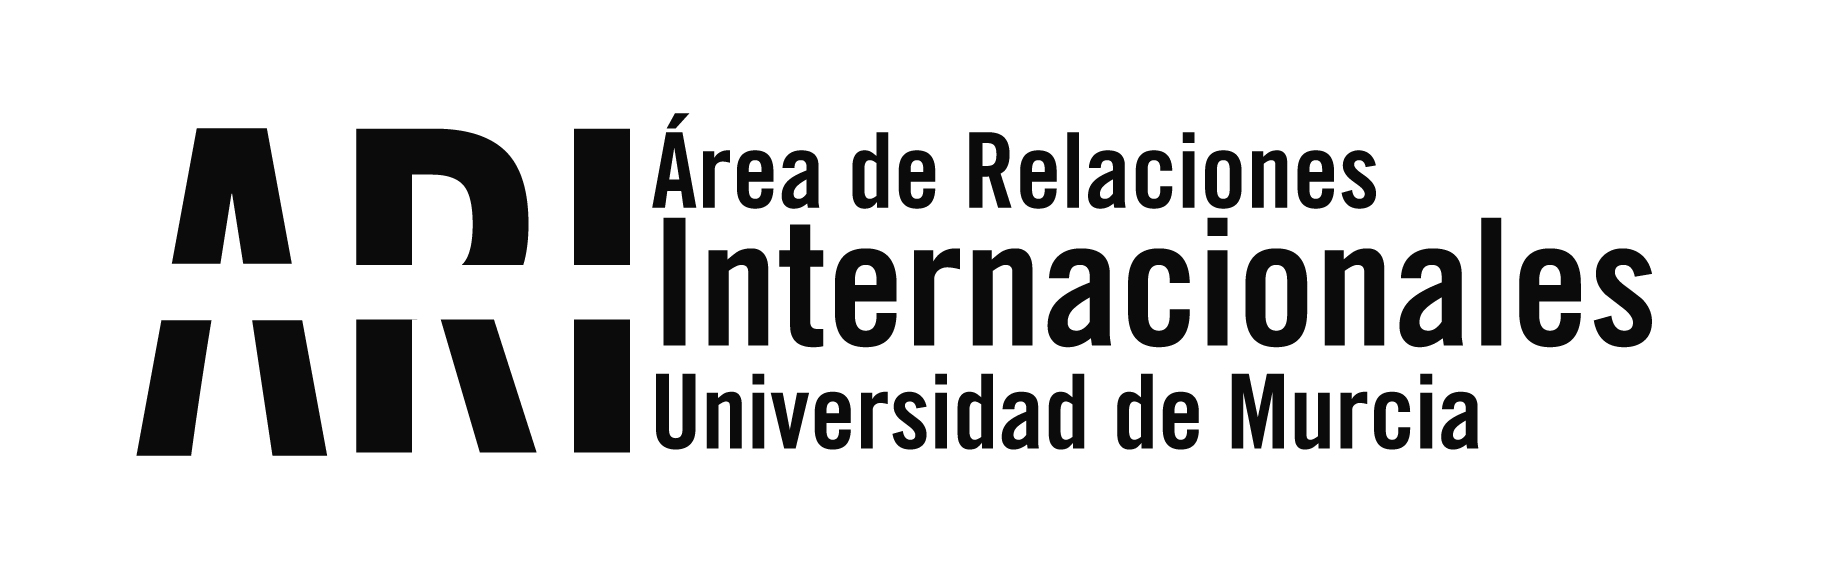 EducationUSA Spain Feria Virtual de Universidades de EE. UU., 26 de octubre 18- a 21hrs. - Área de Relaciones Internacionales